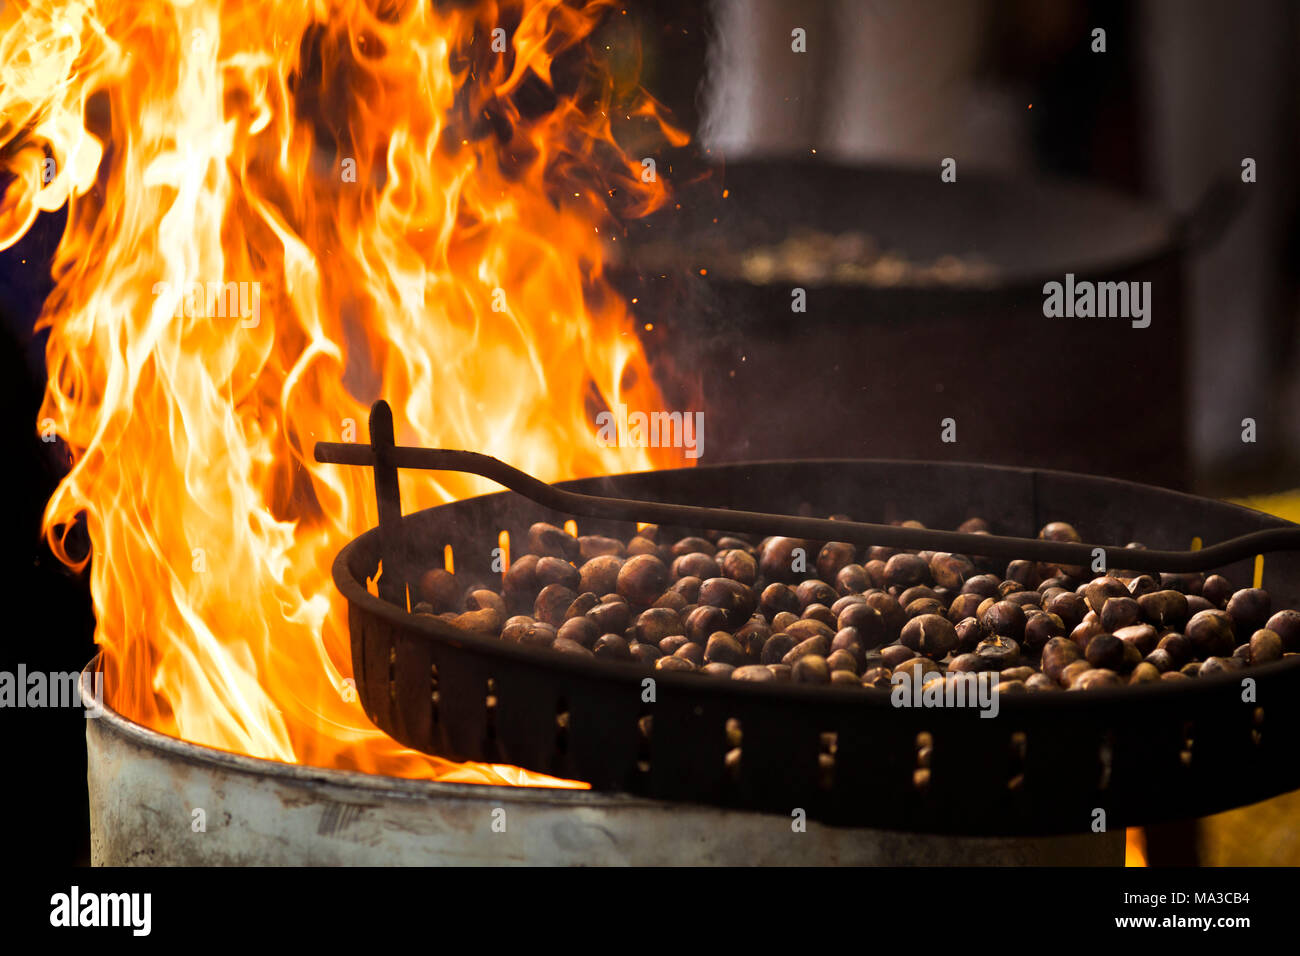 Eine suggestive Snapshot eines kochen Pfanne voller Kastanien rösten durch das Feuer, Provinz Bozen, Südtirol, Trentino Alto Adige, Italien Stockfoto